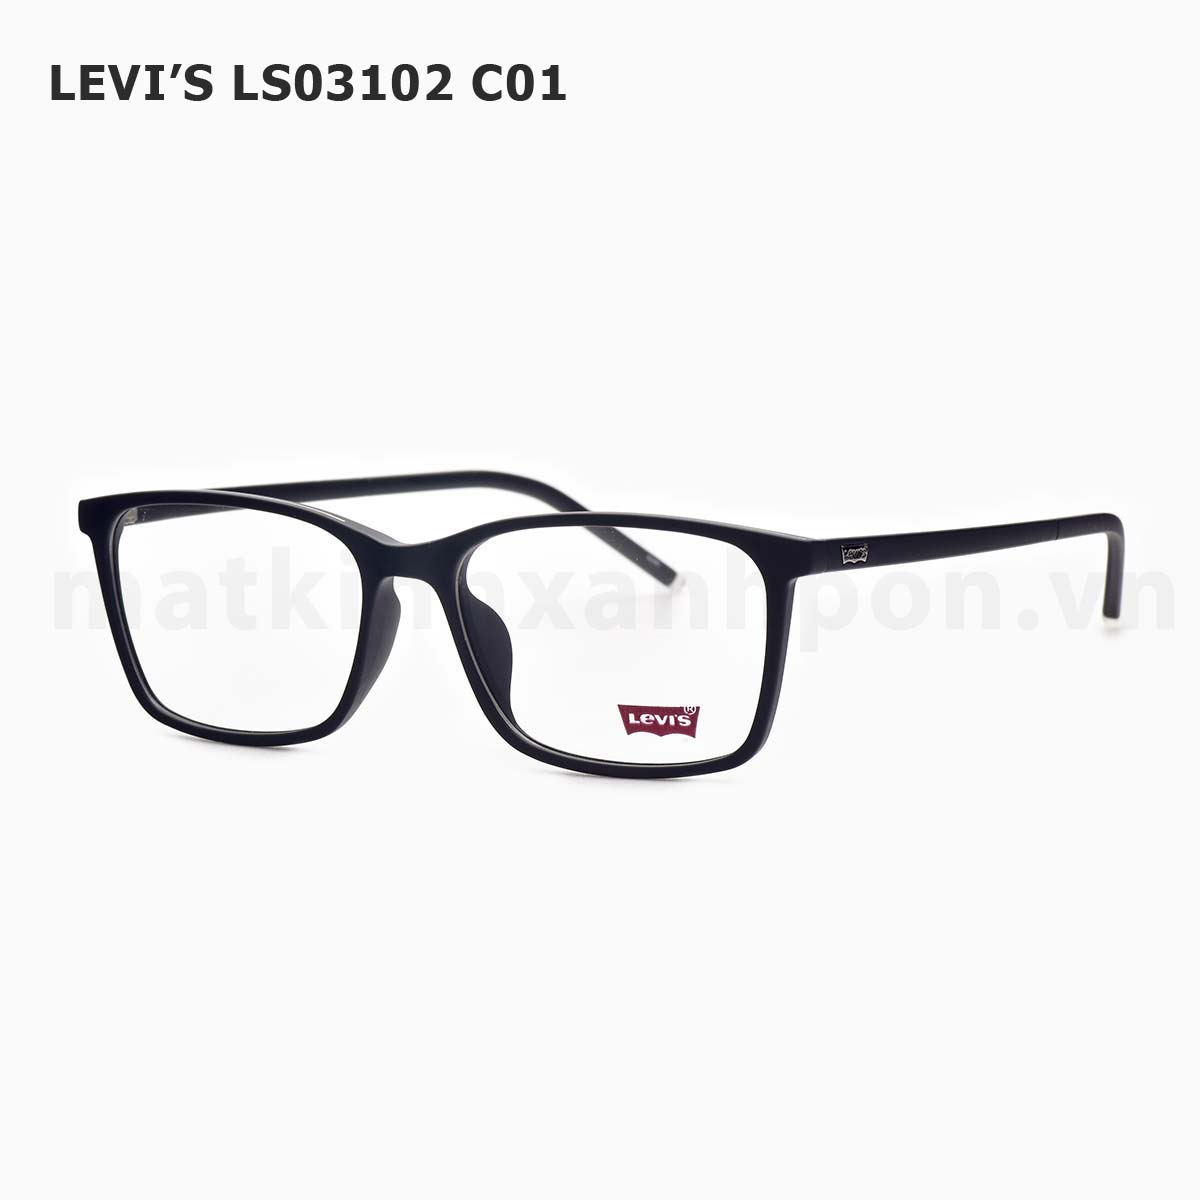 Levi’s LS03102 C01